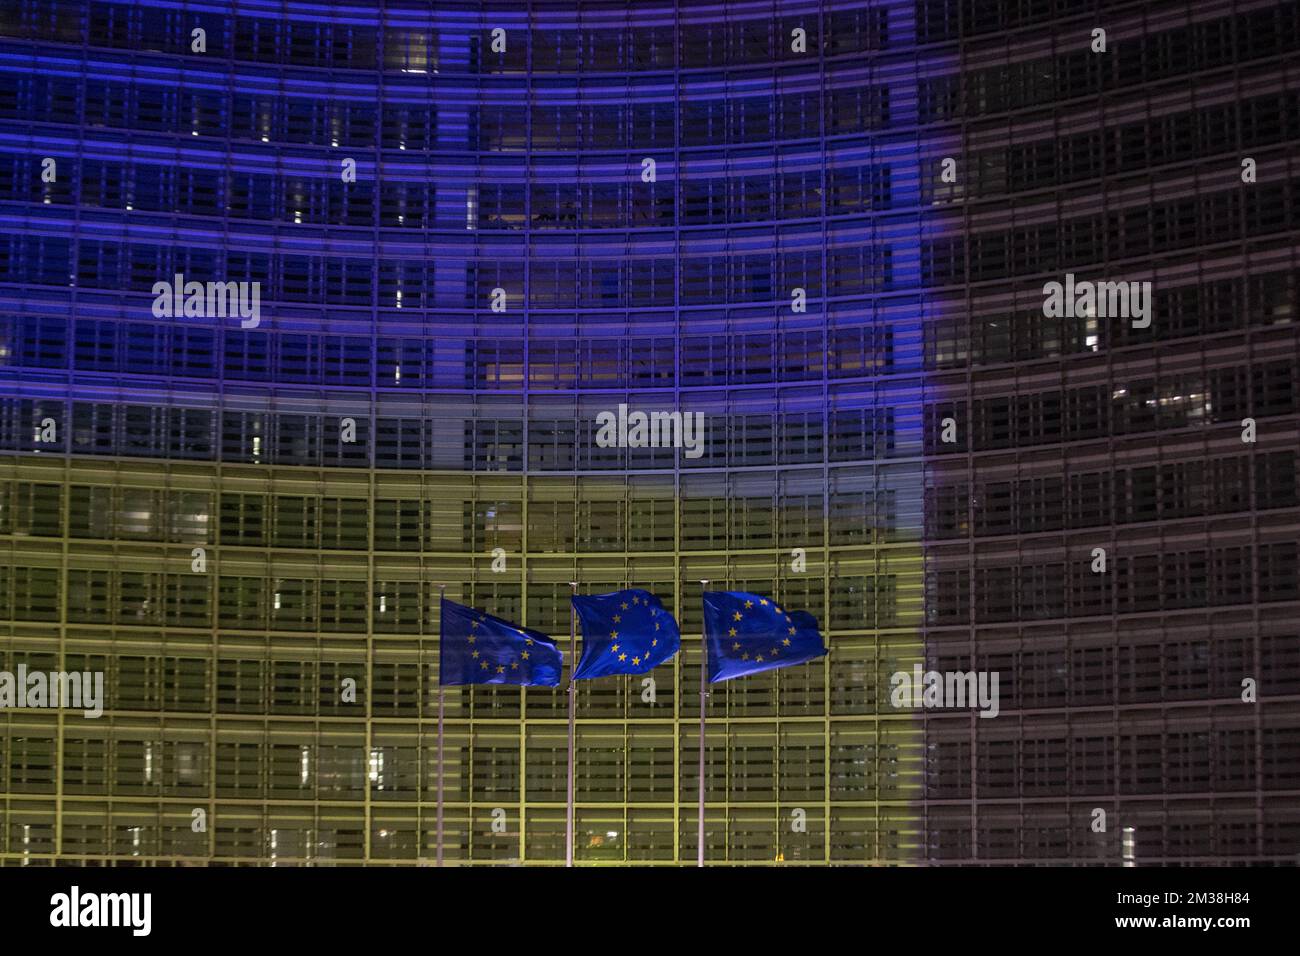 L'immagine mostra le bandiere europee che volano davanti all'edificio Berlaymont, che ospita la sede della Commissione europea, illuminata dai colori della bandiera Ucraina, per mostrare sostegno al popolo ucraino, a Bruxelles, giovedì 24 febbraio 2022. Ieri sera, la Russia ha deciso di invadere diverse regioni ucraine. FOTO DI BELGA NICOLAS MAETERLINCK Foto Stock